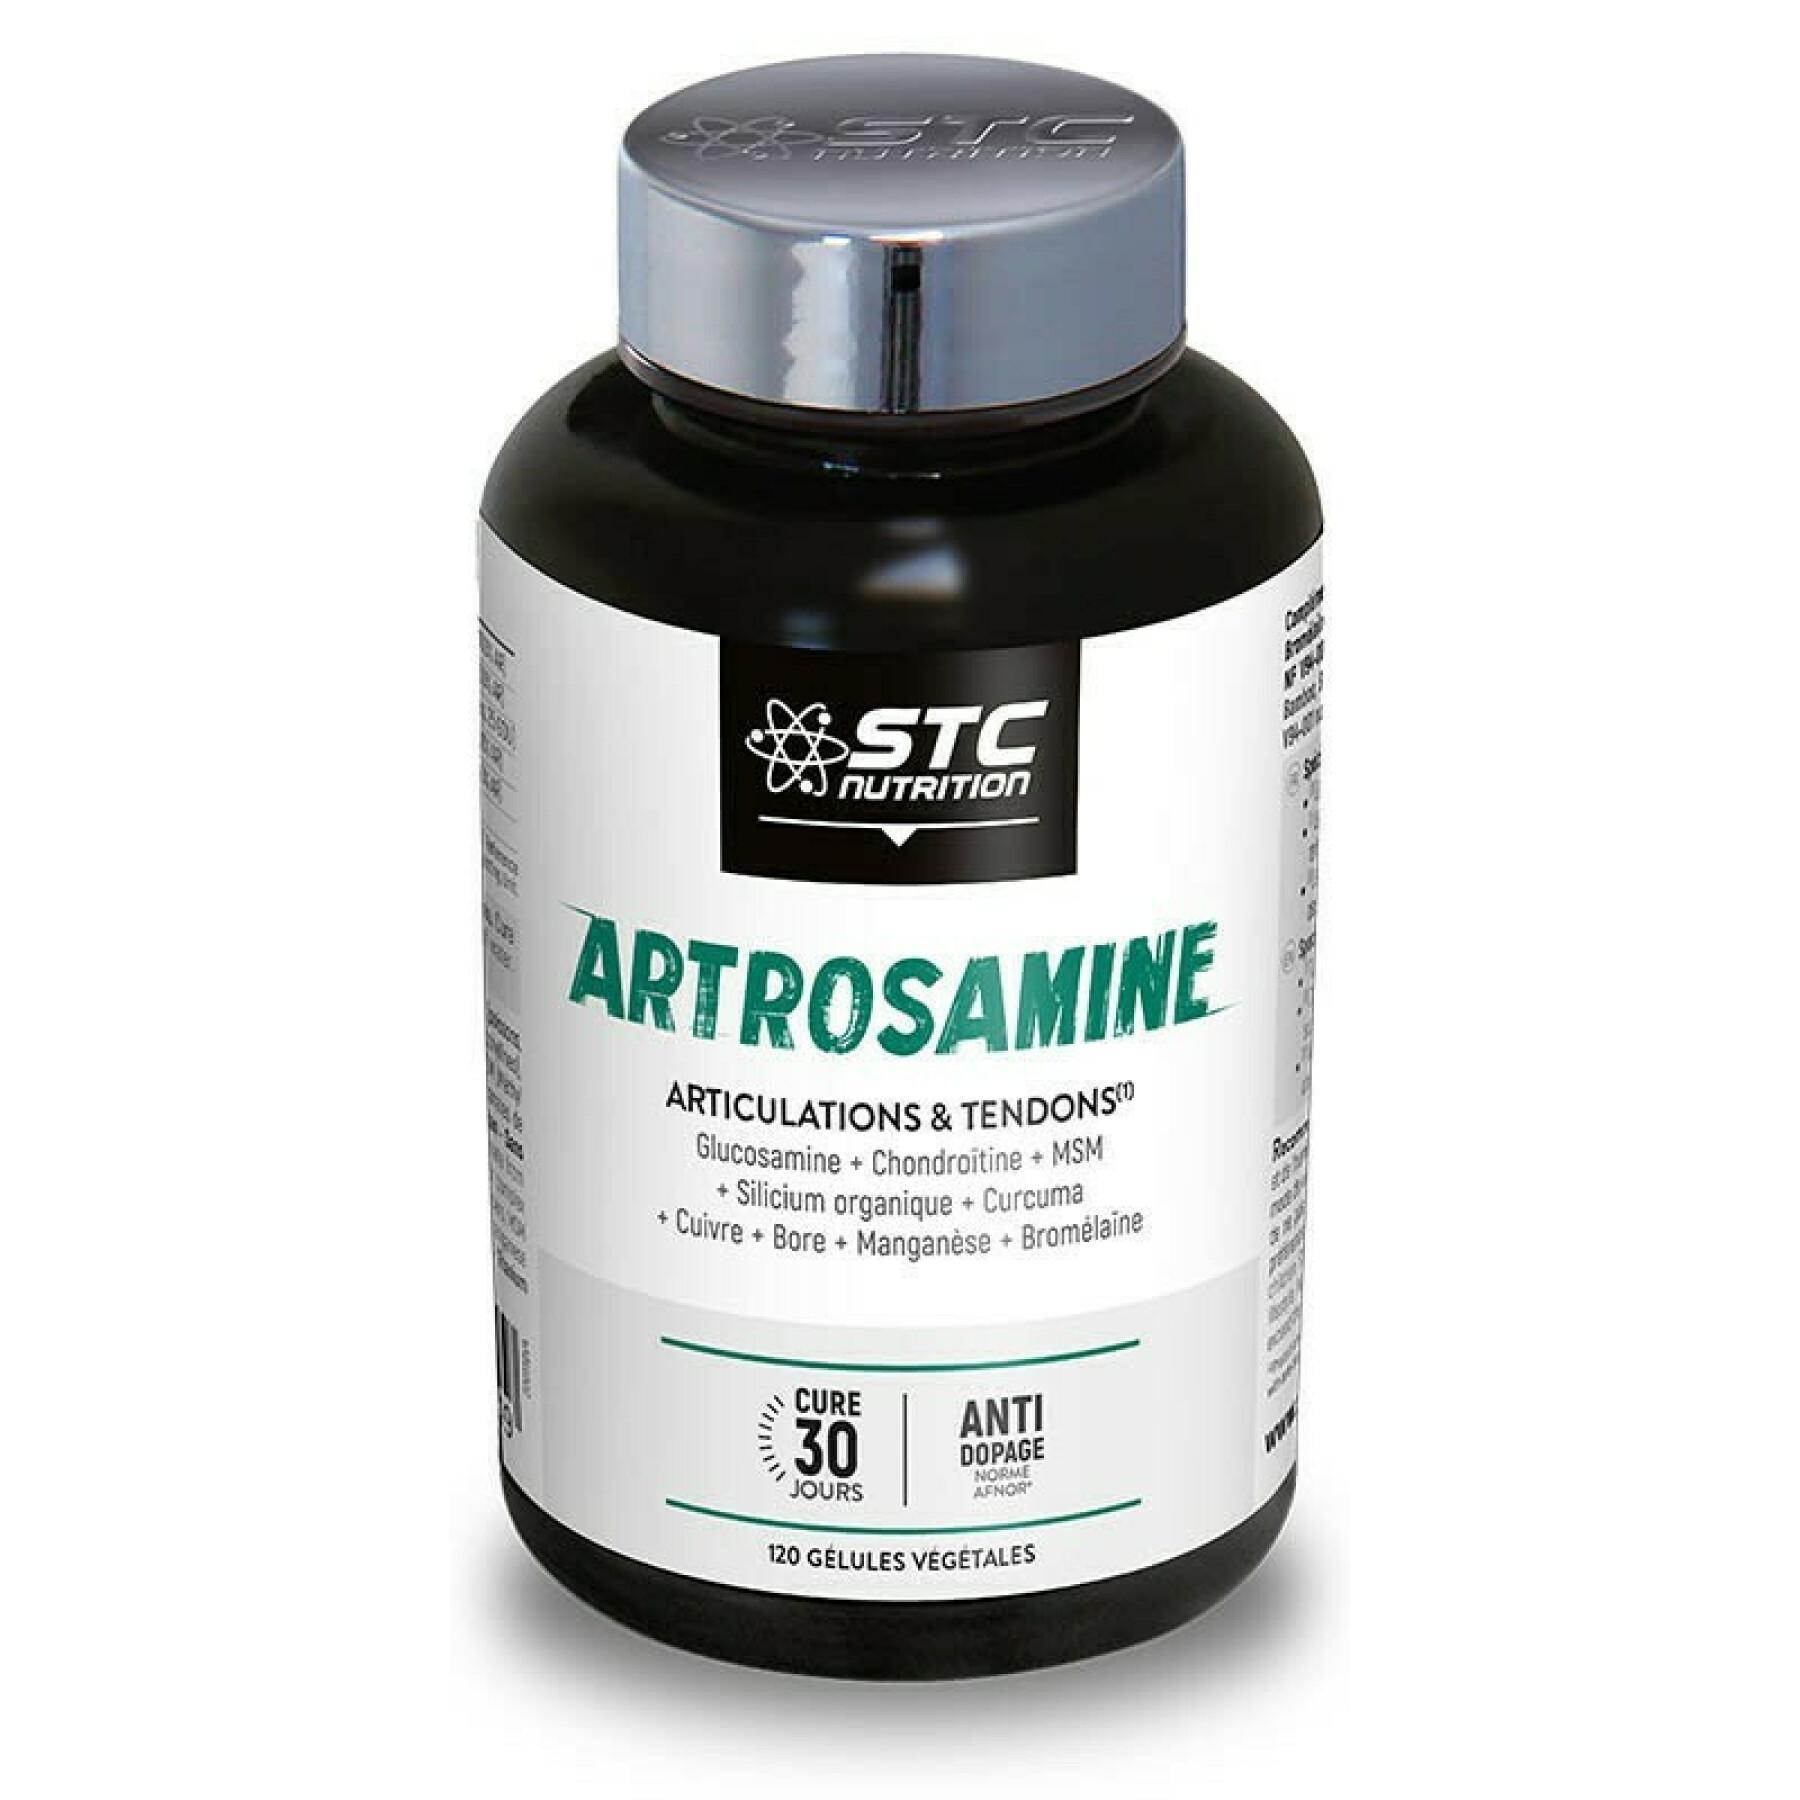 Artrosamina® articulações e tendões STC Nutrition (120 gélules végétales)